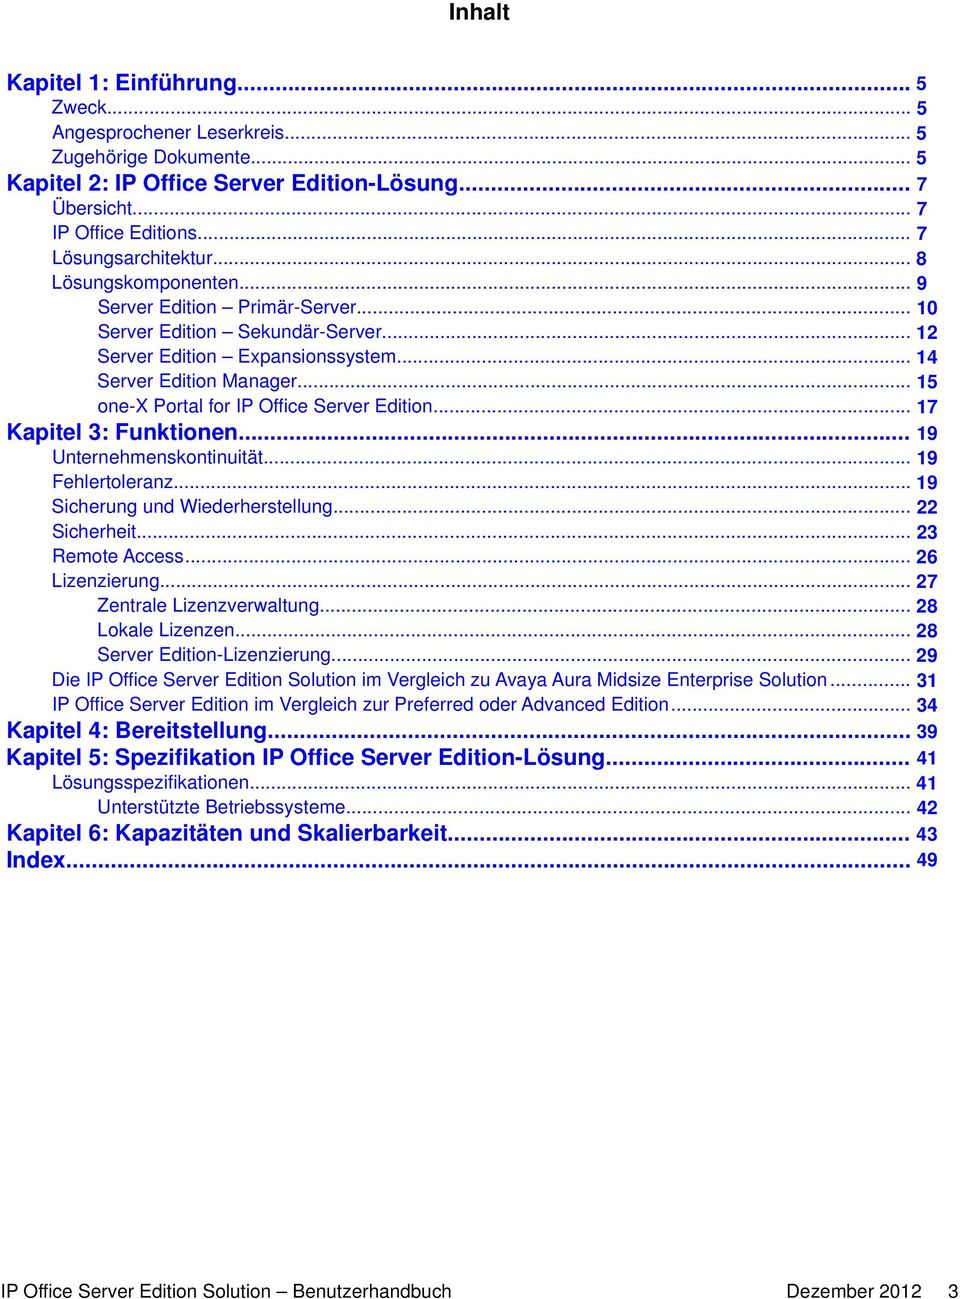 .. 15 one-x Portal for IP Office Server Edition... 17 Kapitel 3: Funktionen... 19 Unternehmenskontinuität... 19 Fehlertoleranz... 19 Sicherung und Wiederherstellung... 22 Sicherheit... 23 Remote Access.